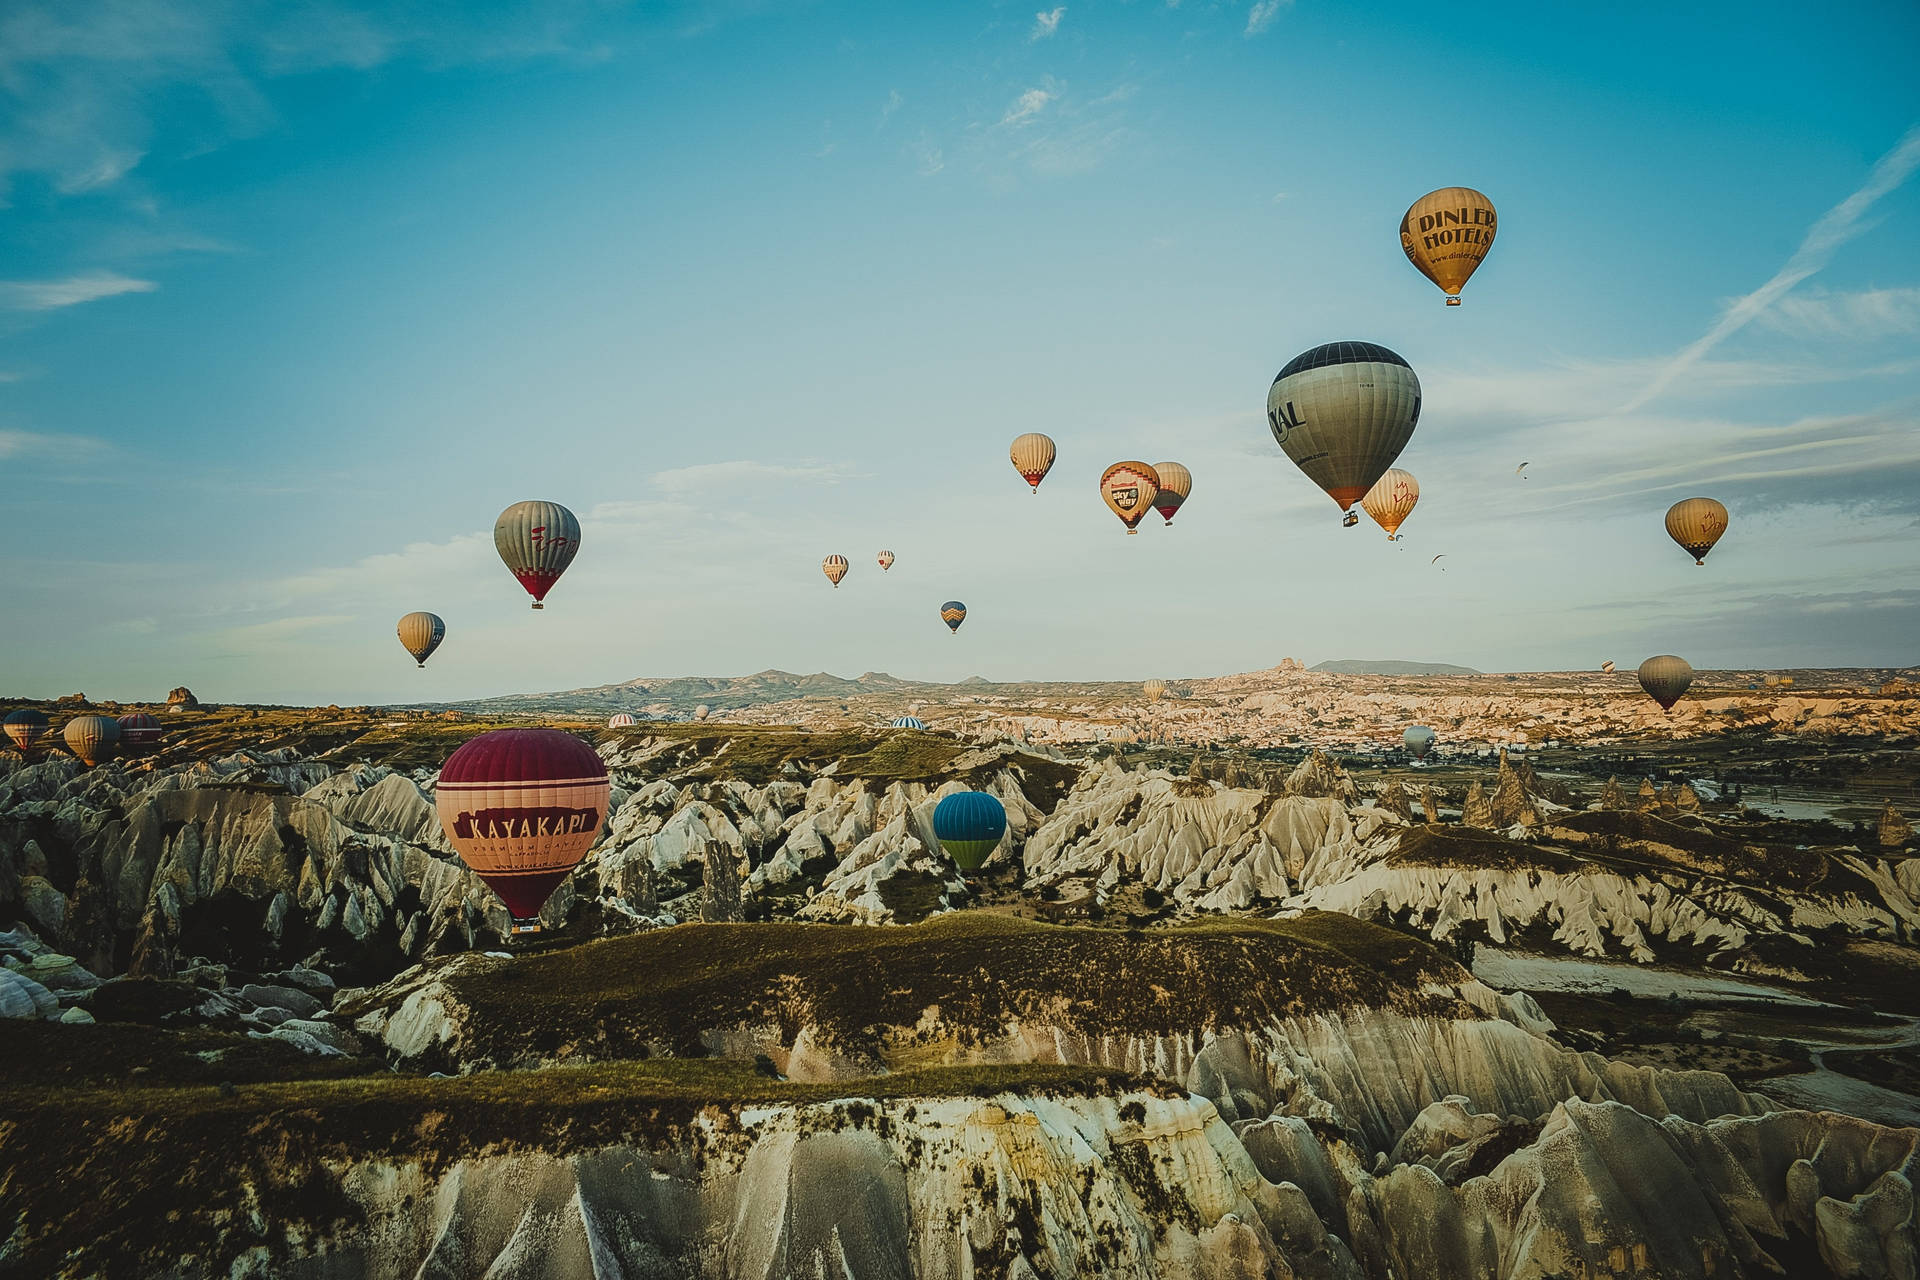 Cappadociaklippen Ballons Wallpaper